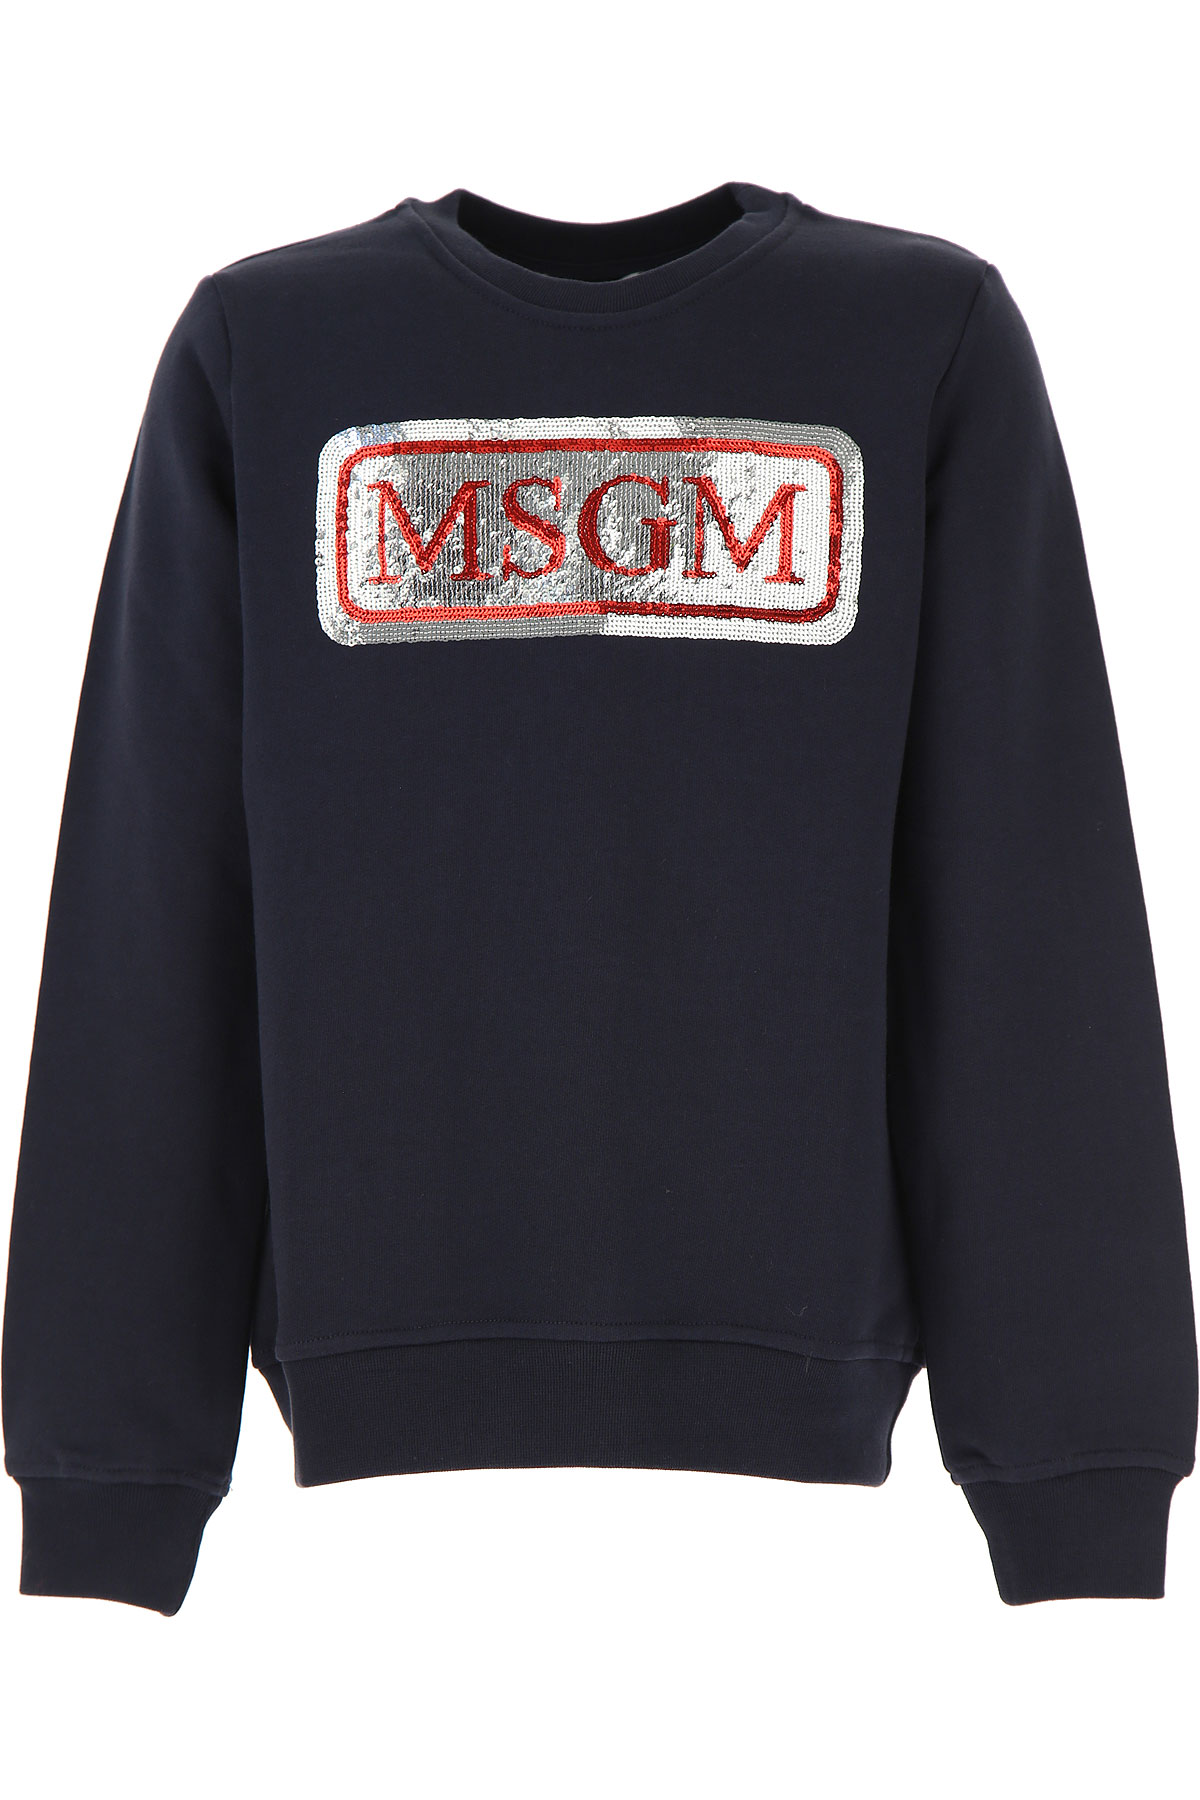 MSGM Kinder Sweatshirt & Kapuzenpullover für Mädchen Günstig im Sale, Blau, Baumwolle, 2017, 10Y 12Y 14Y 6Y 8Y